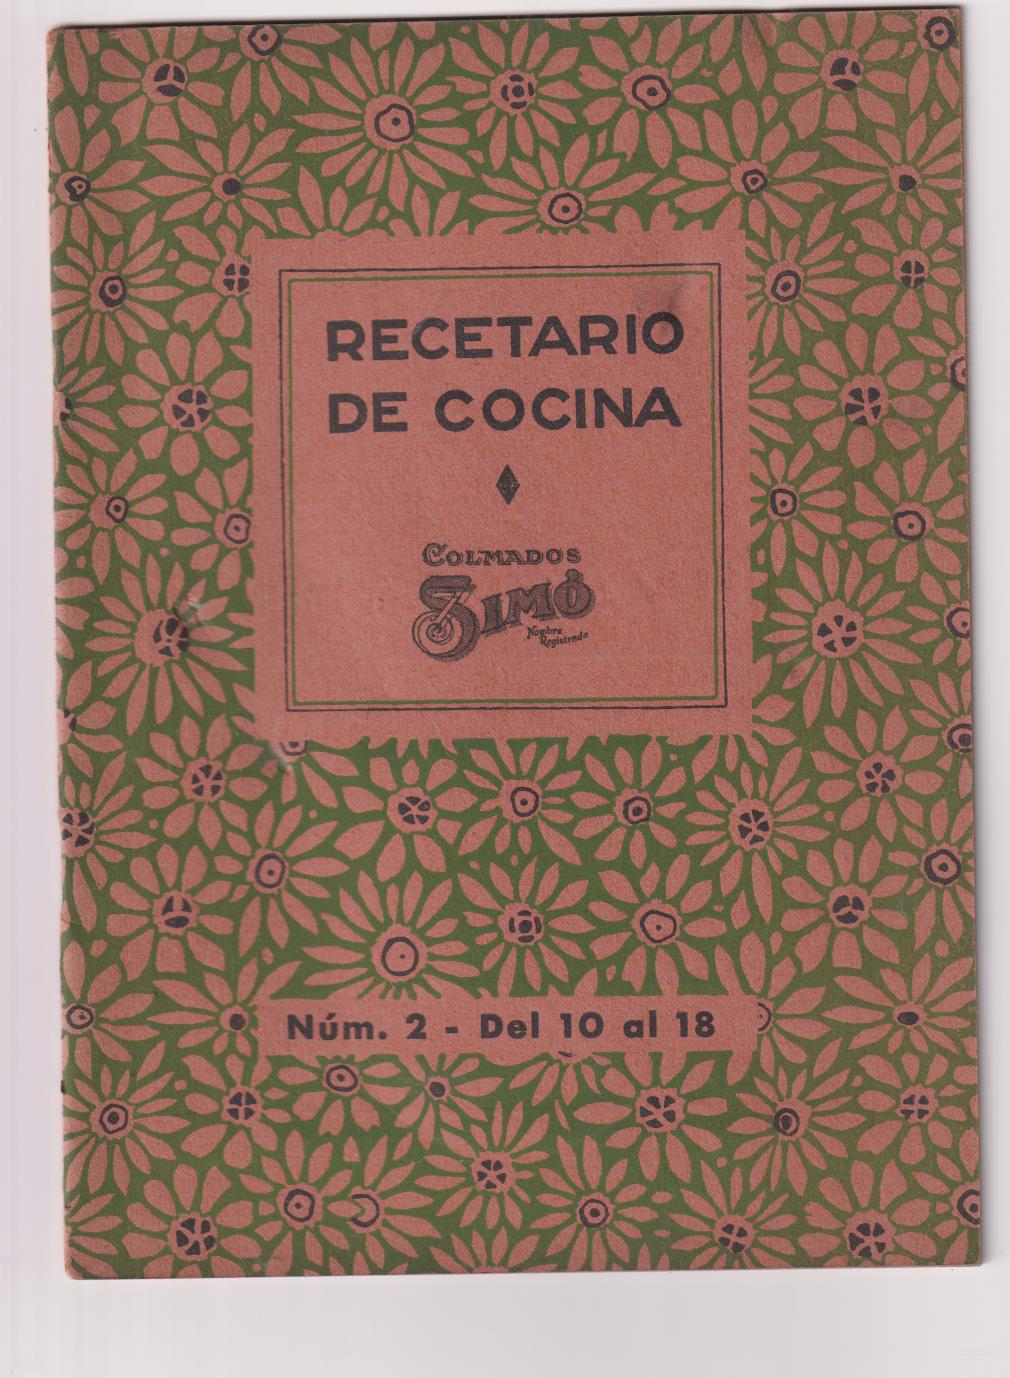 Recetario de Cocina nº 2. Colmados Simó. Recetas 10 a 18 (21x15) 22 páginas con publicidad. 1940